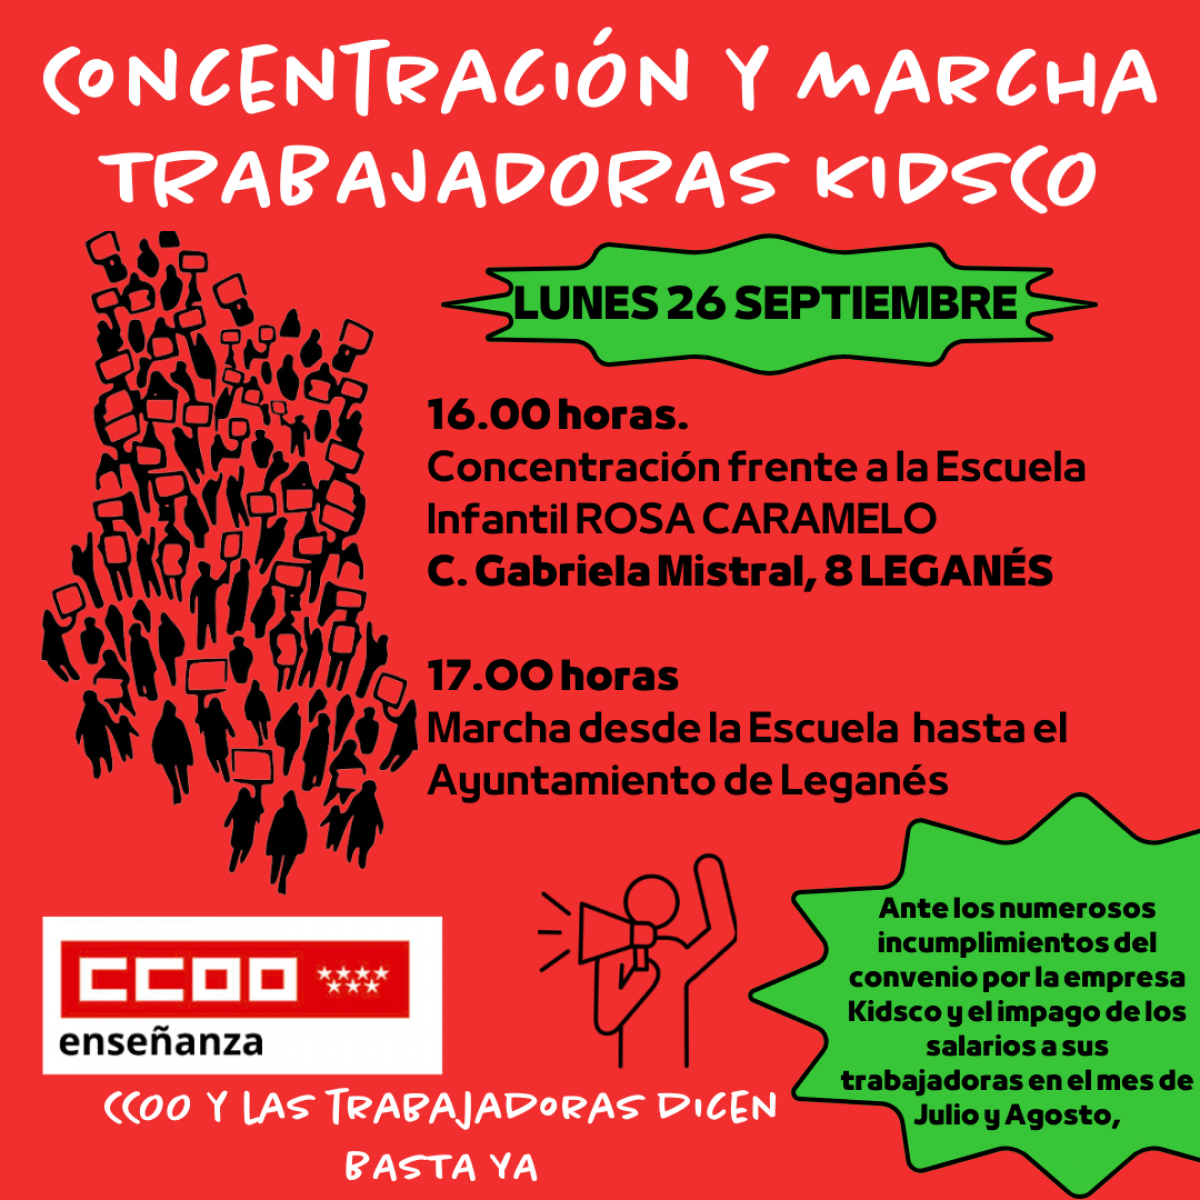 CCOO muestra su apoyo a las trabajadoras de la empresa Kidsco